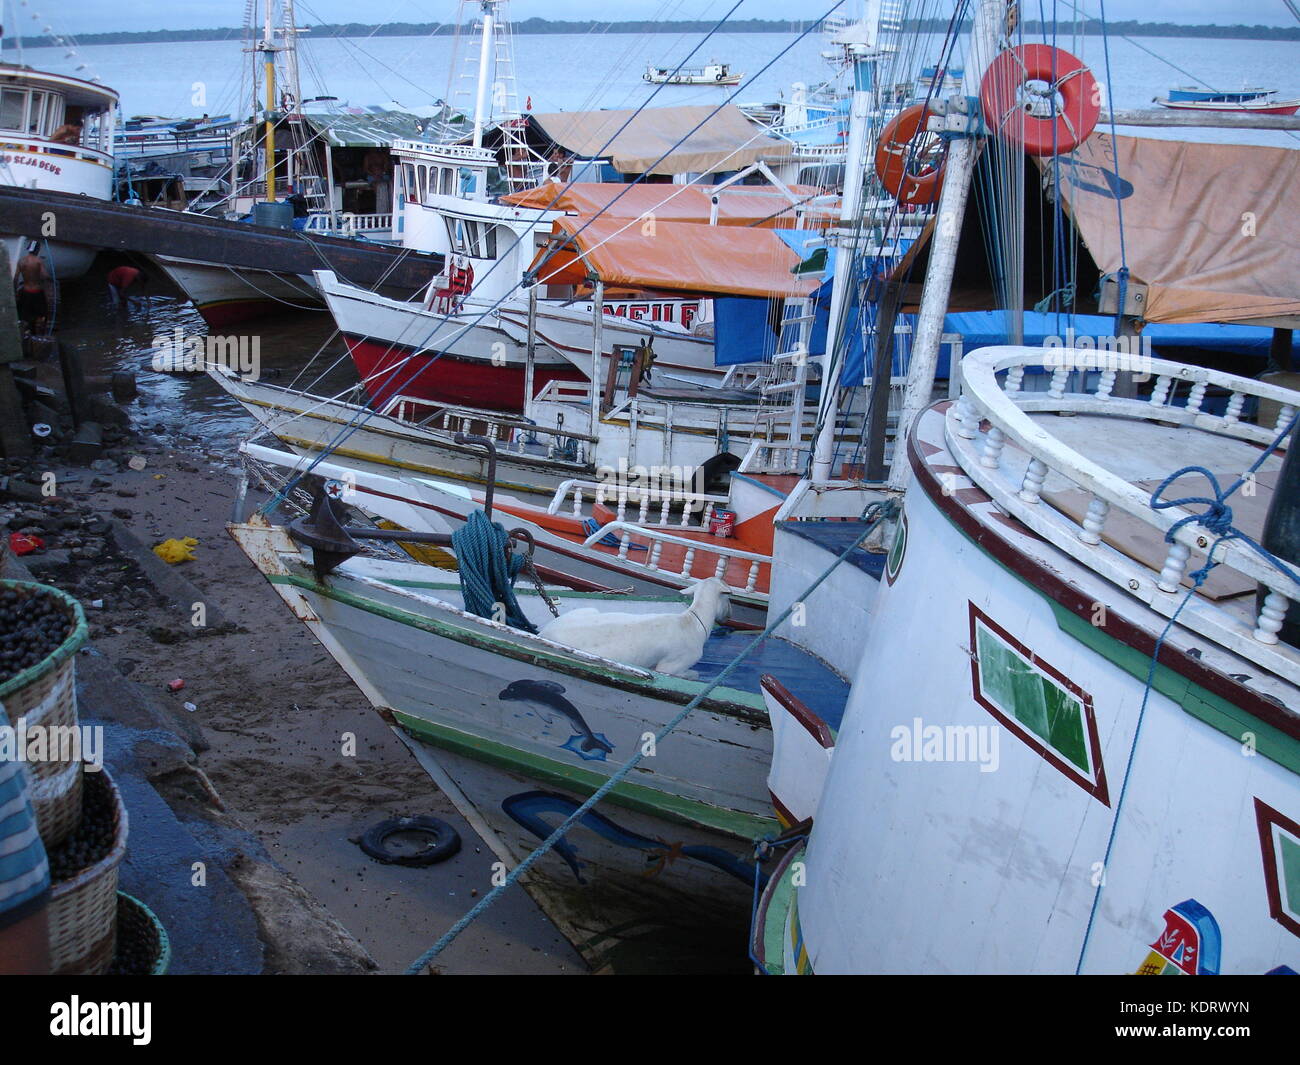 Viw des bateaux du marché acai à Belem, Brésil Banque D'Images